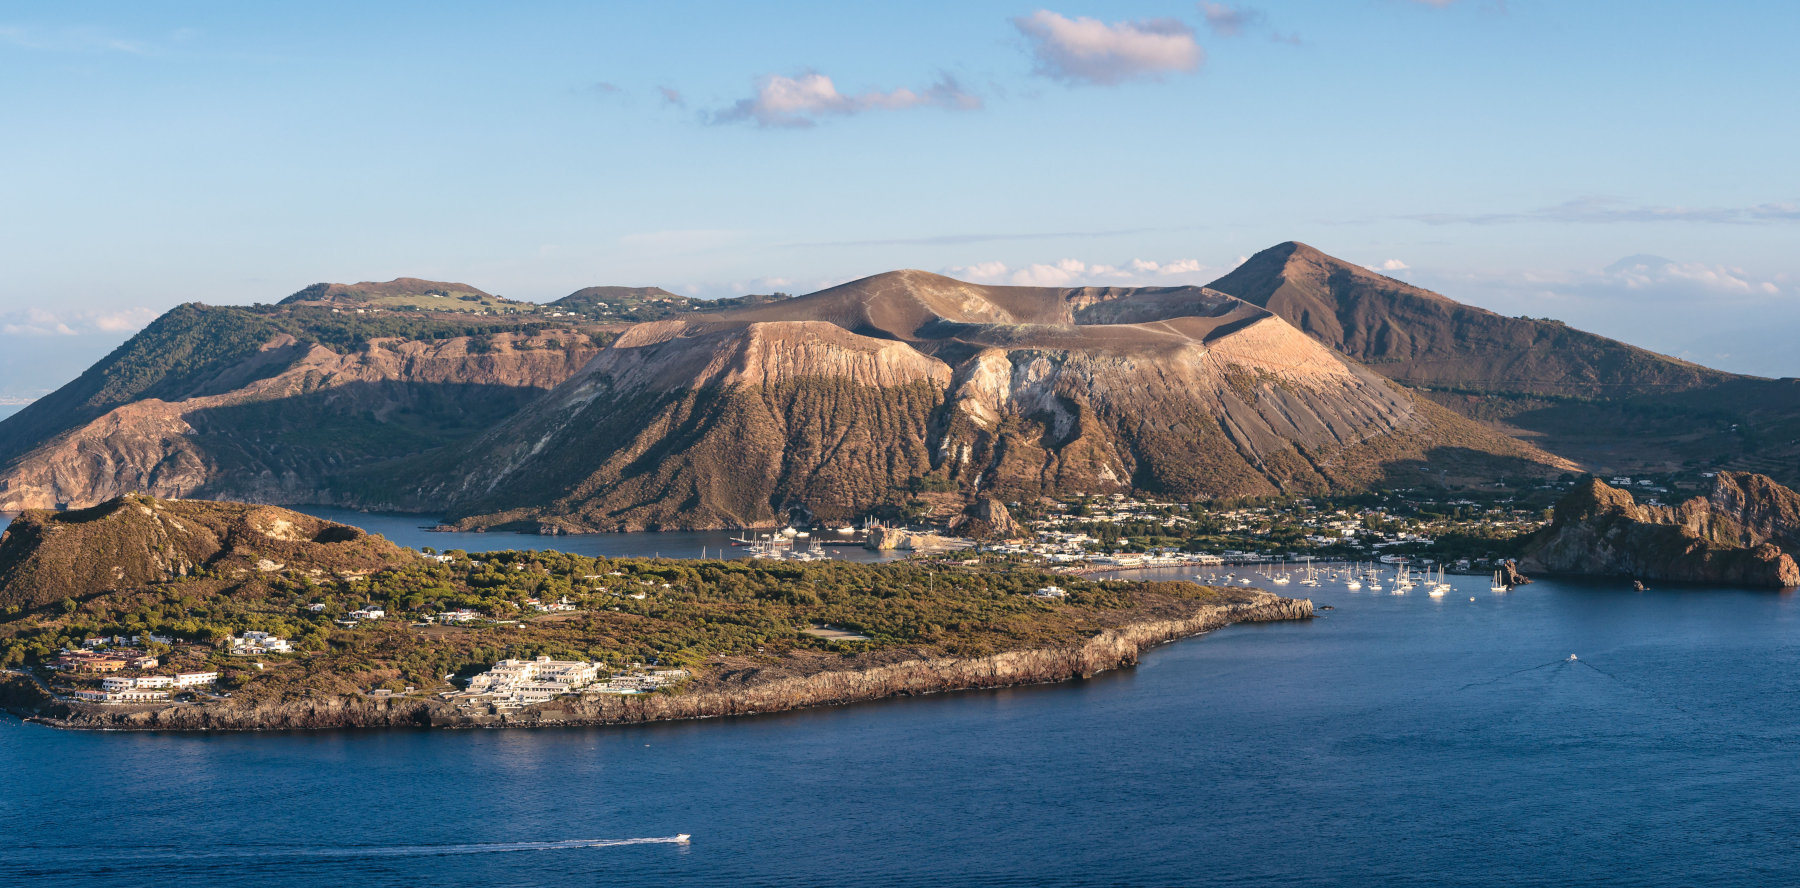 Vulcano: Έντονη ηφαιστειακή δραστηριότητα στο ιταλικό νησί – Διετάχθη εκκένωση